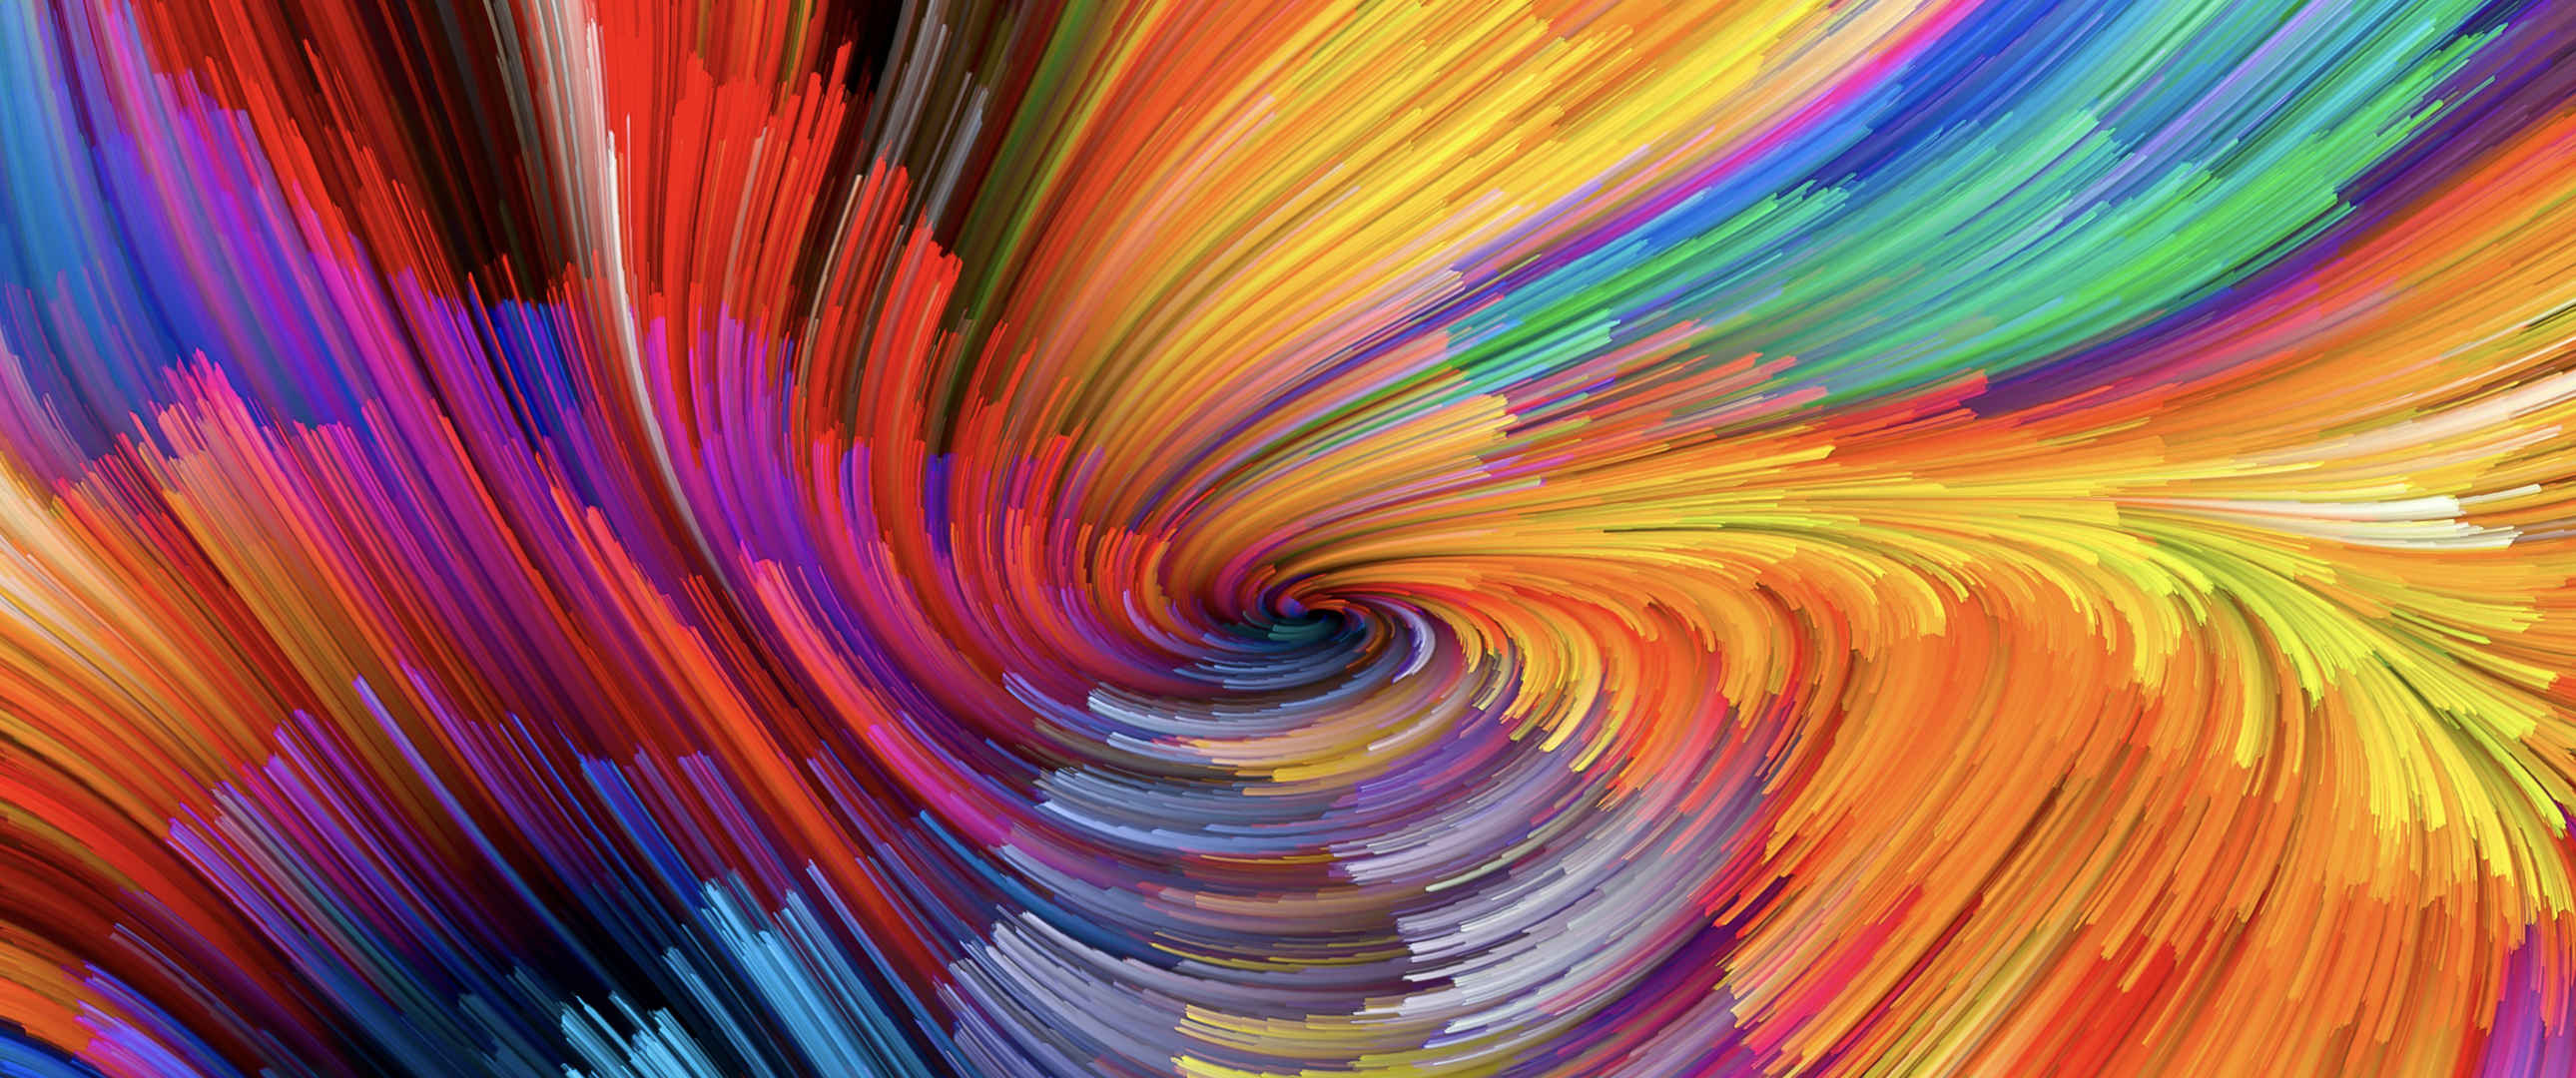 电脑壁纸立体彩色漩涡